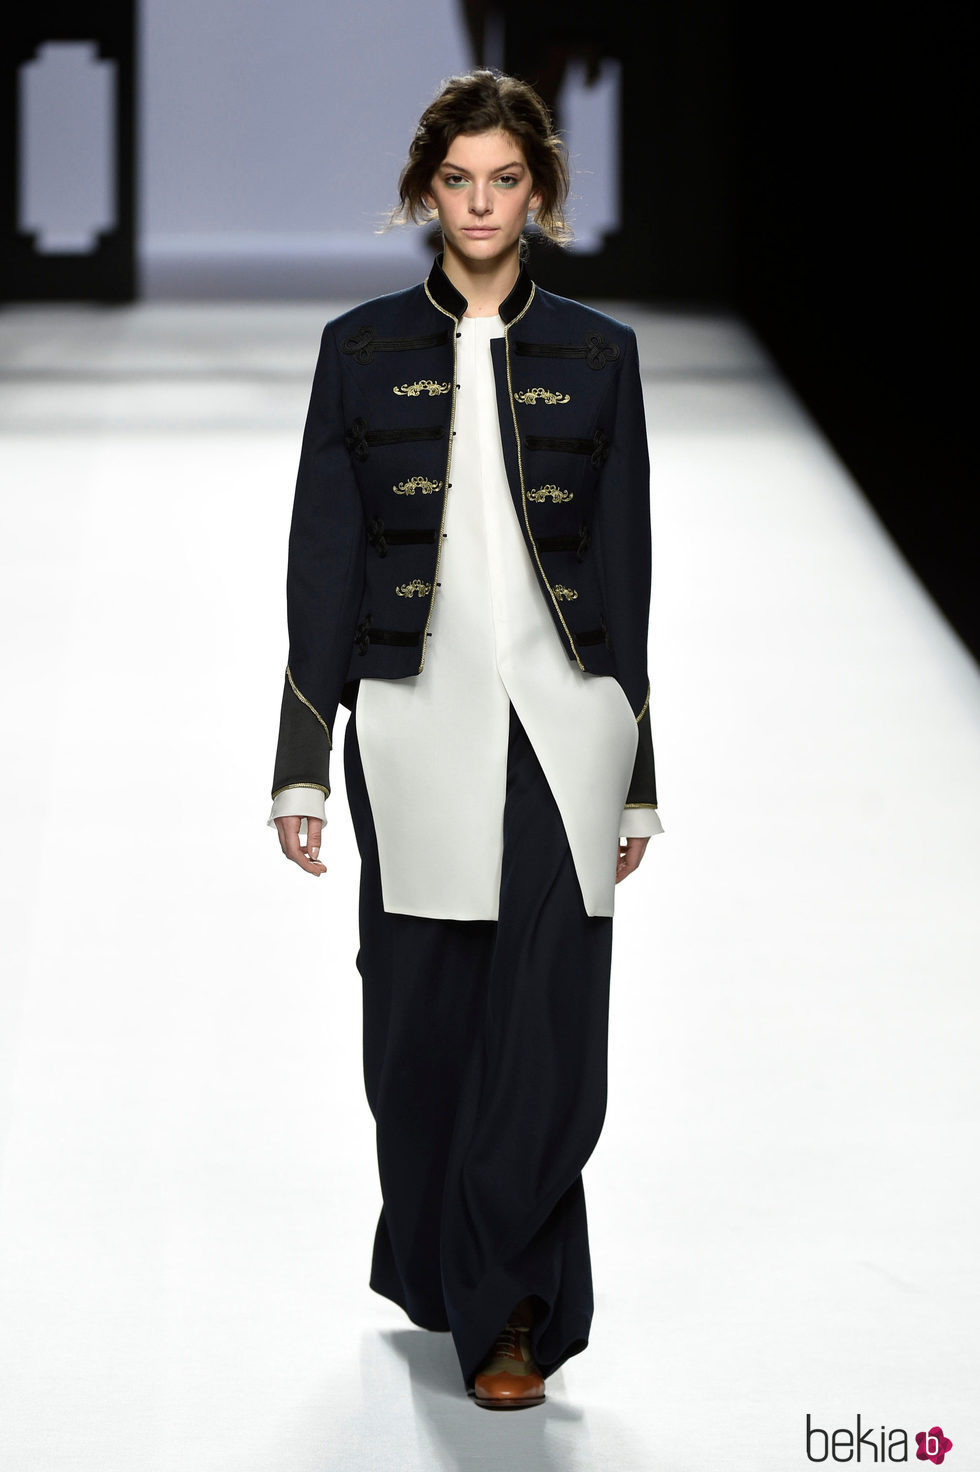 Pantalón ancho y chaqueta militar de Devota & Lomba presentado en la colección otoño/invierno 2017/2018 en Madrid Fashion Week